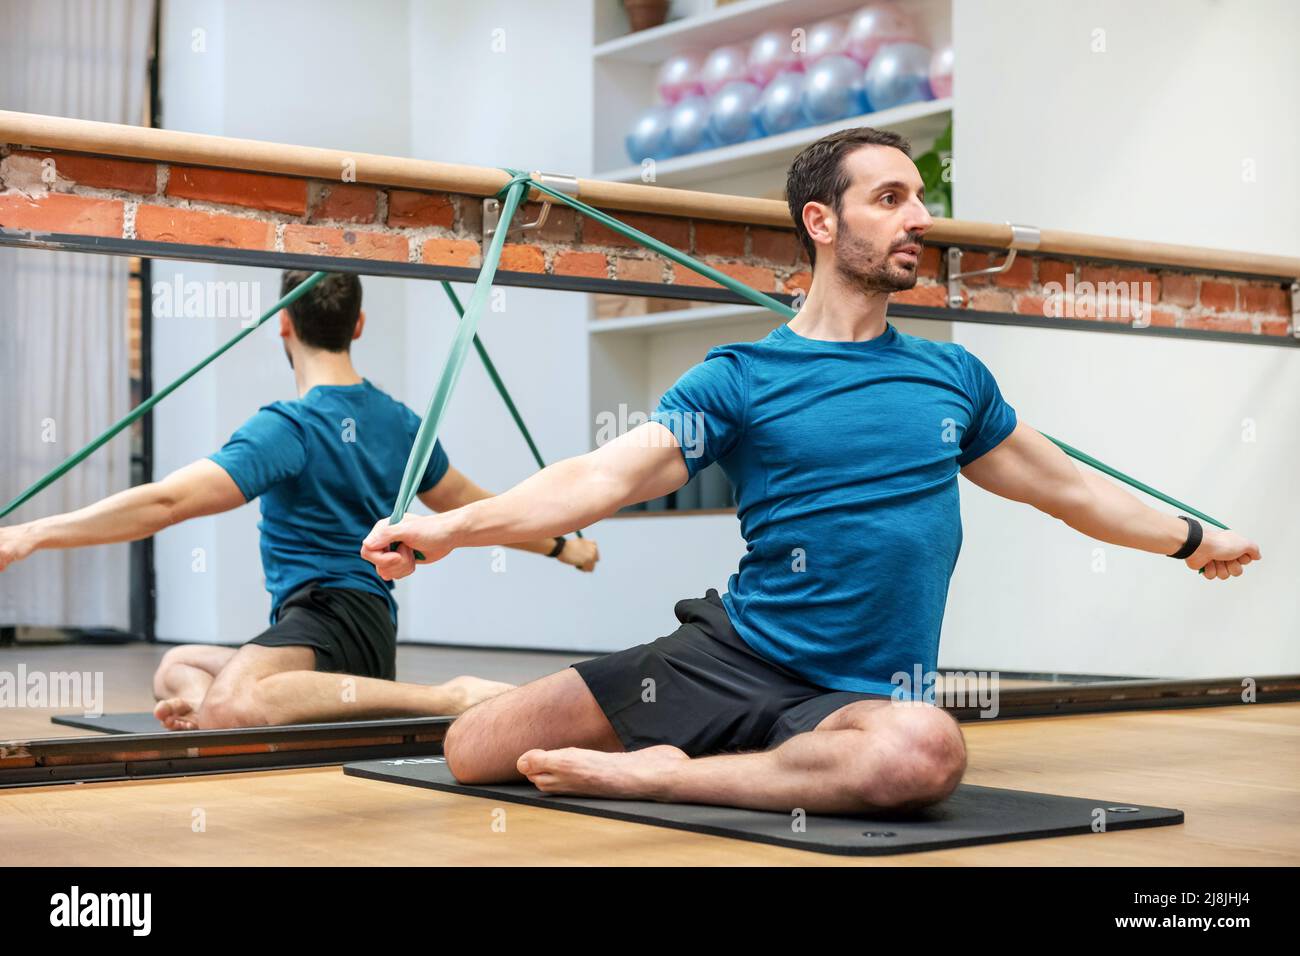 Mann, der Meerjungfrau Pilates trainiert mit Widerstandsbändern auf einer Matte in einem Fitnessstudio mit Spiegelreflexion dahinter Stockfoto